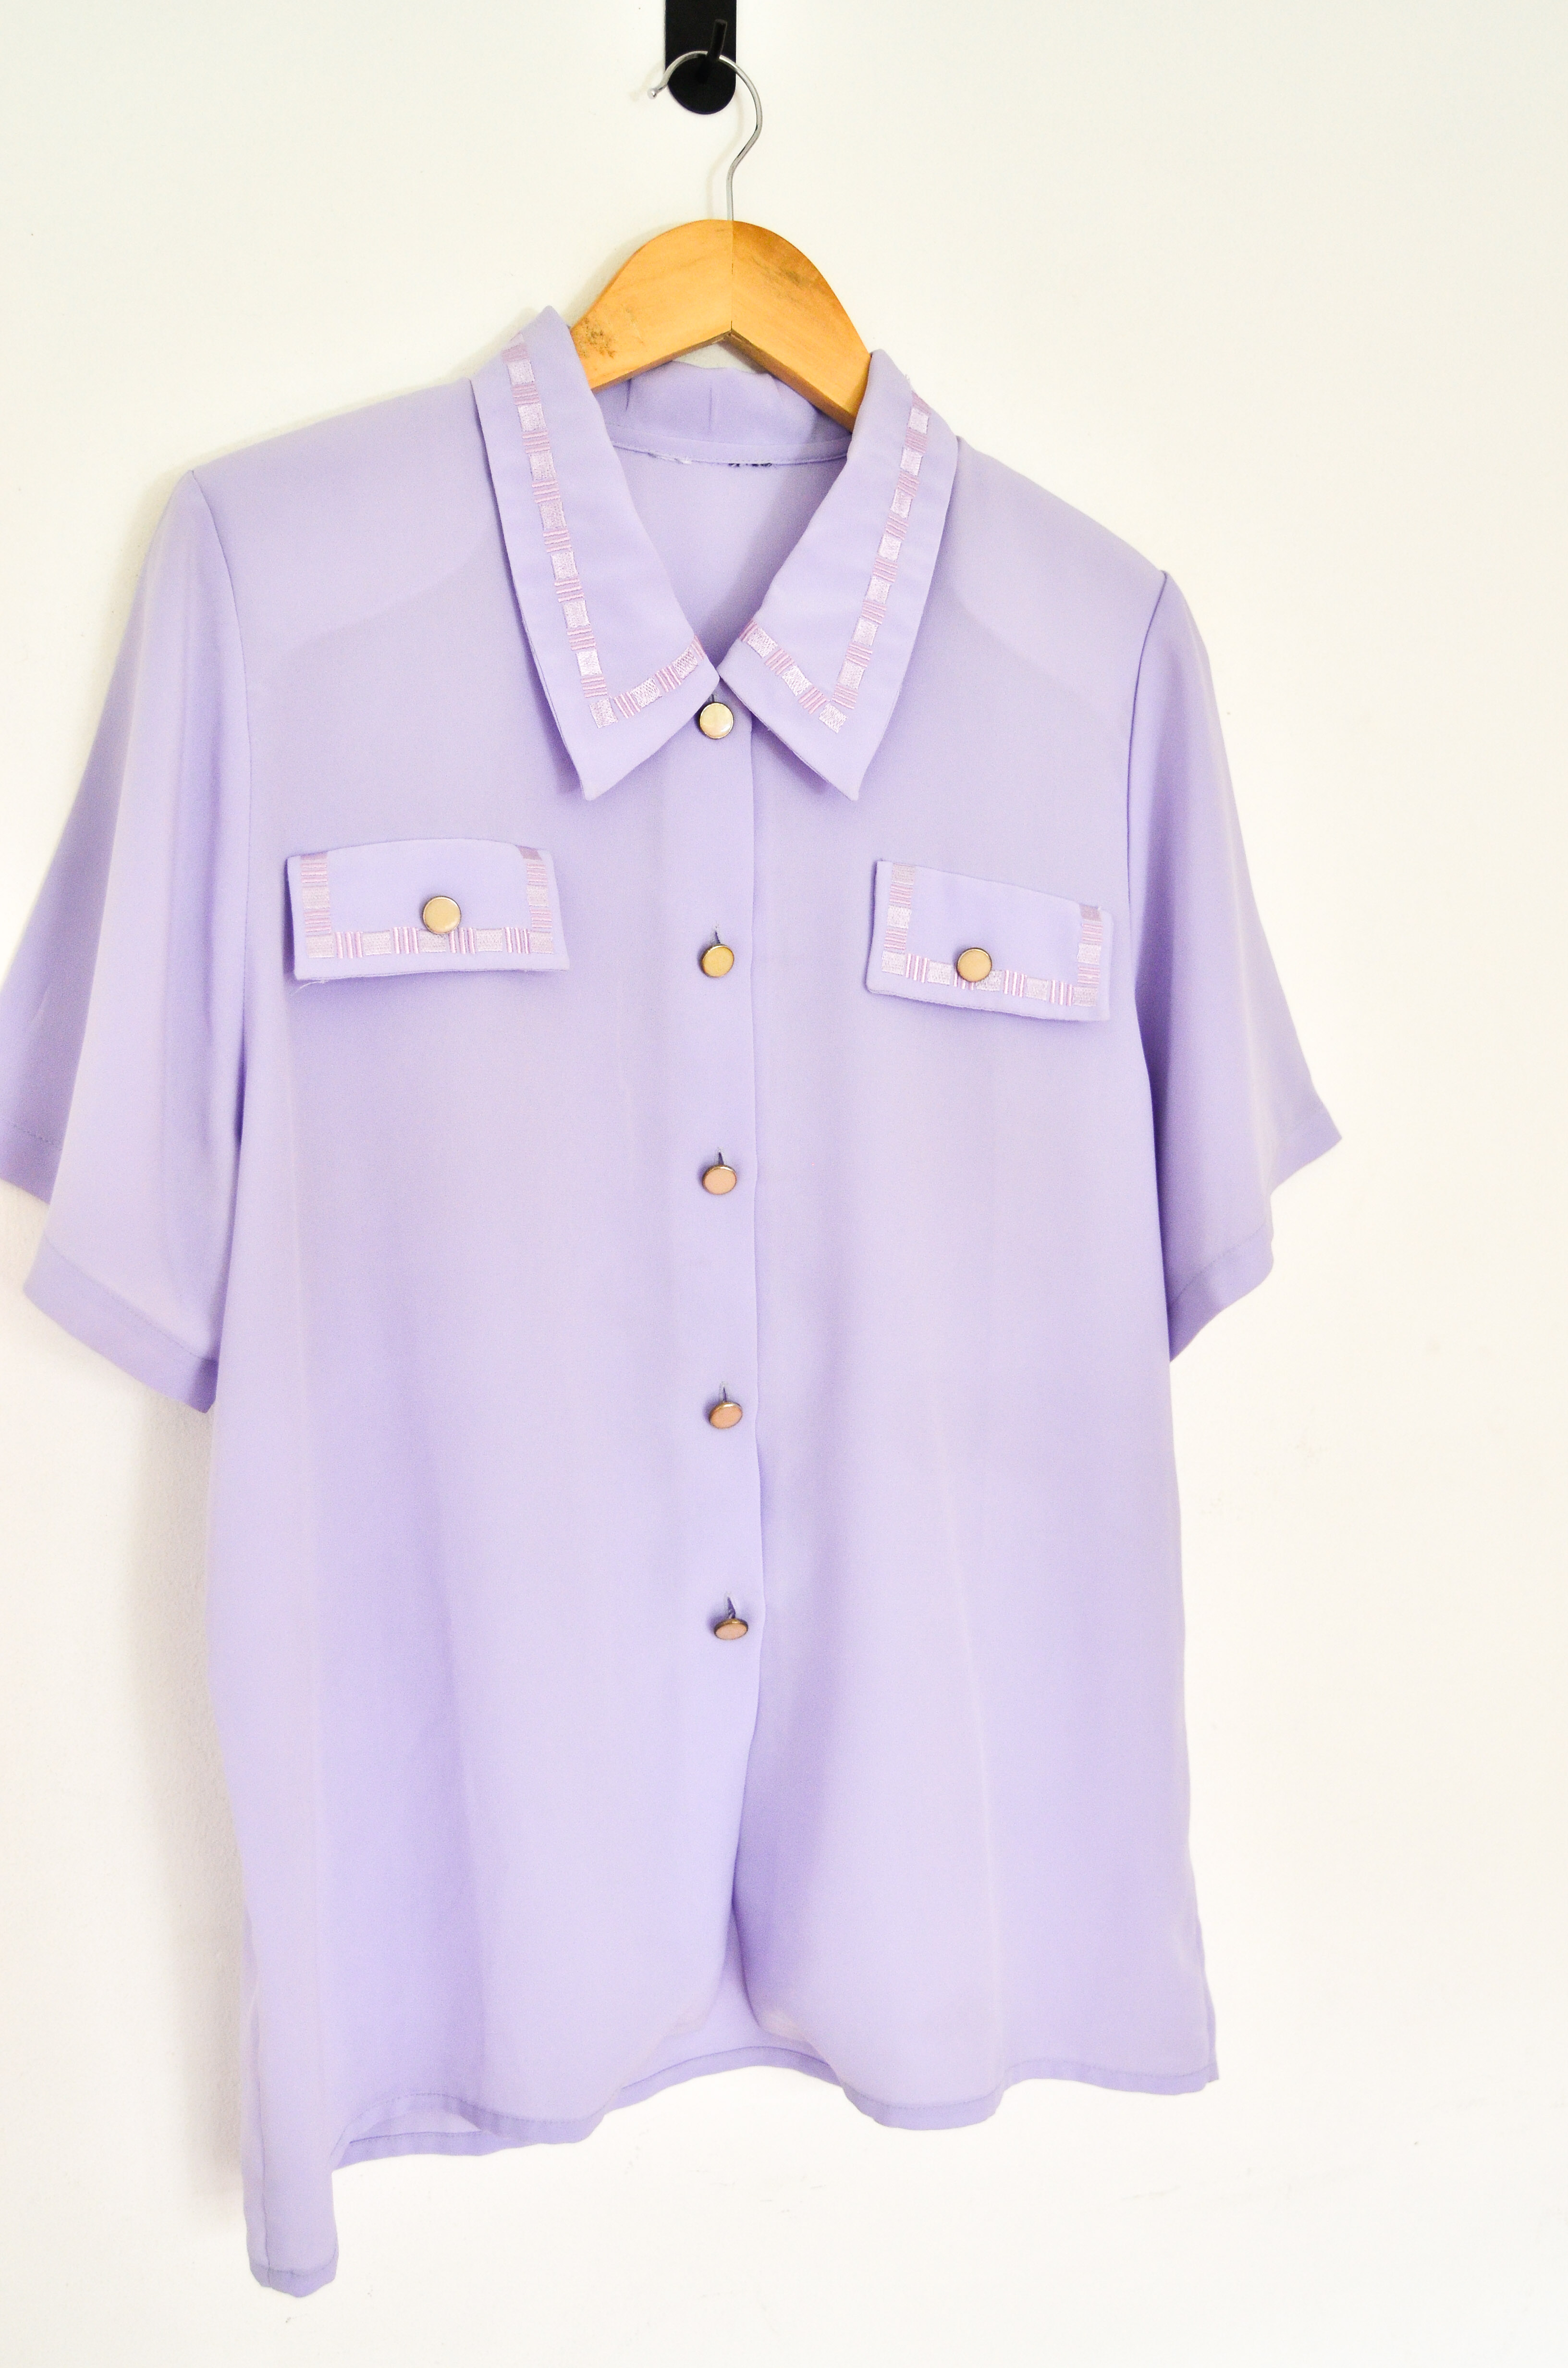 Camisa lila pastel vntg